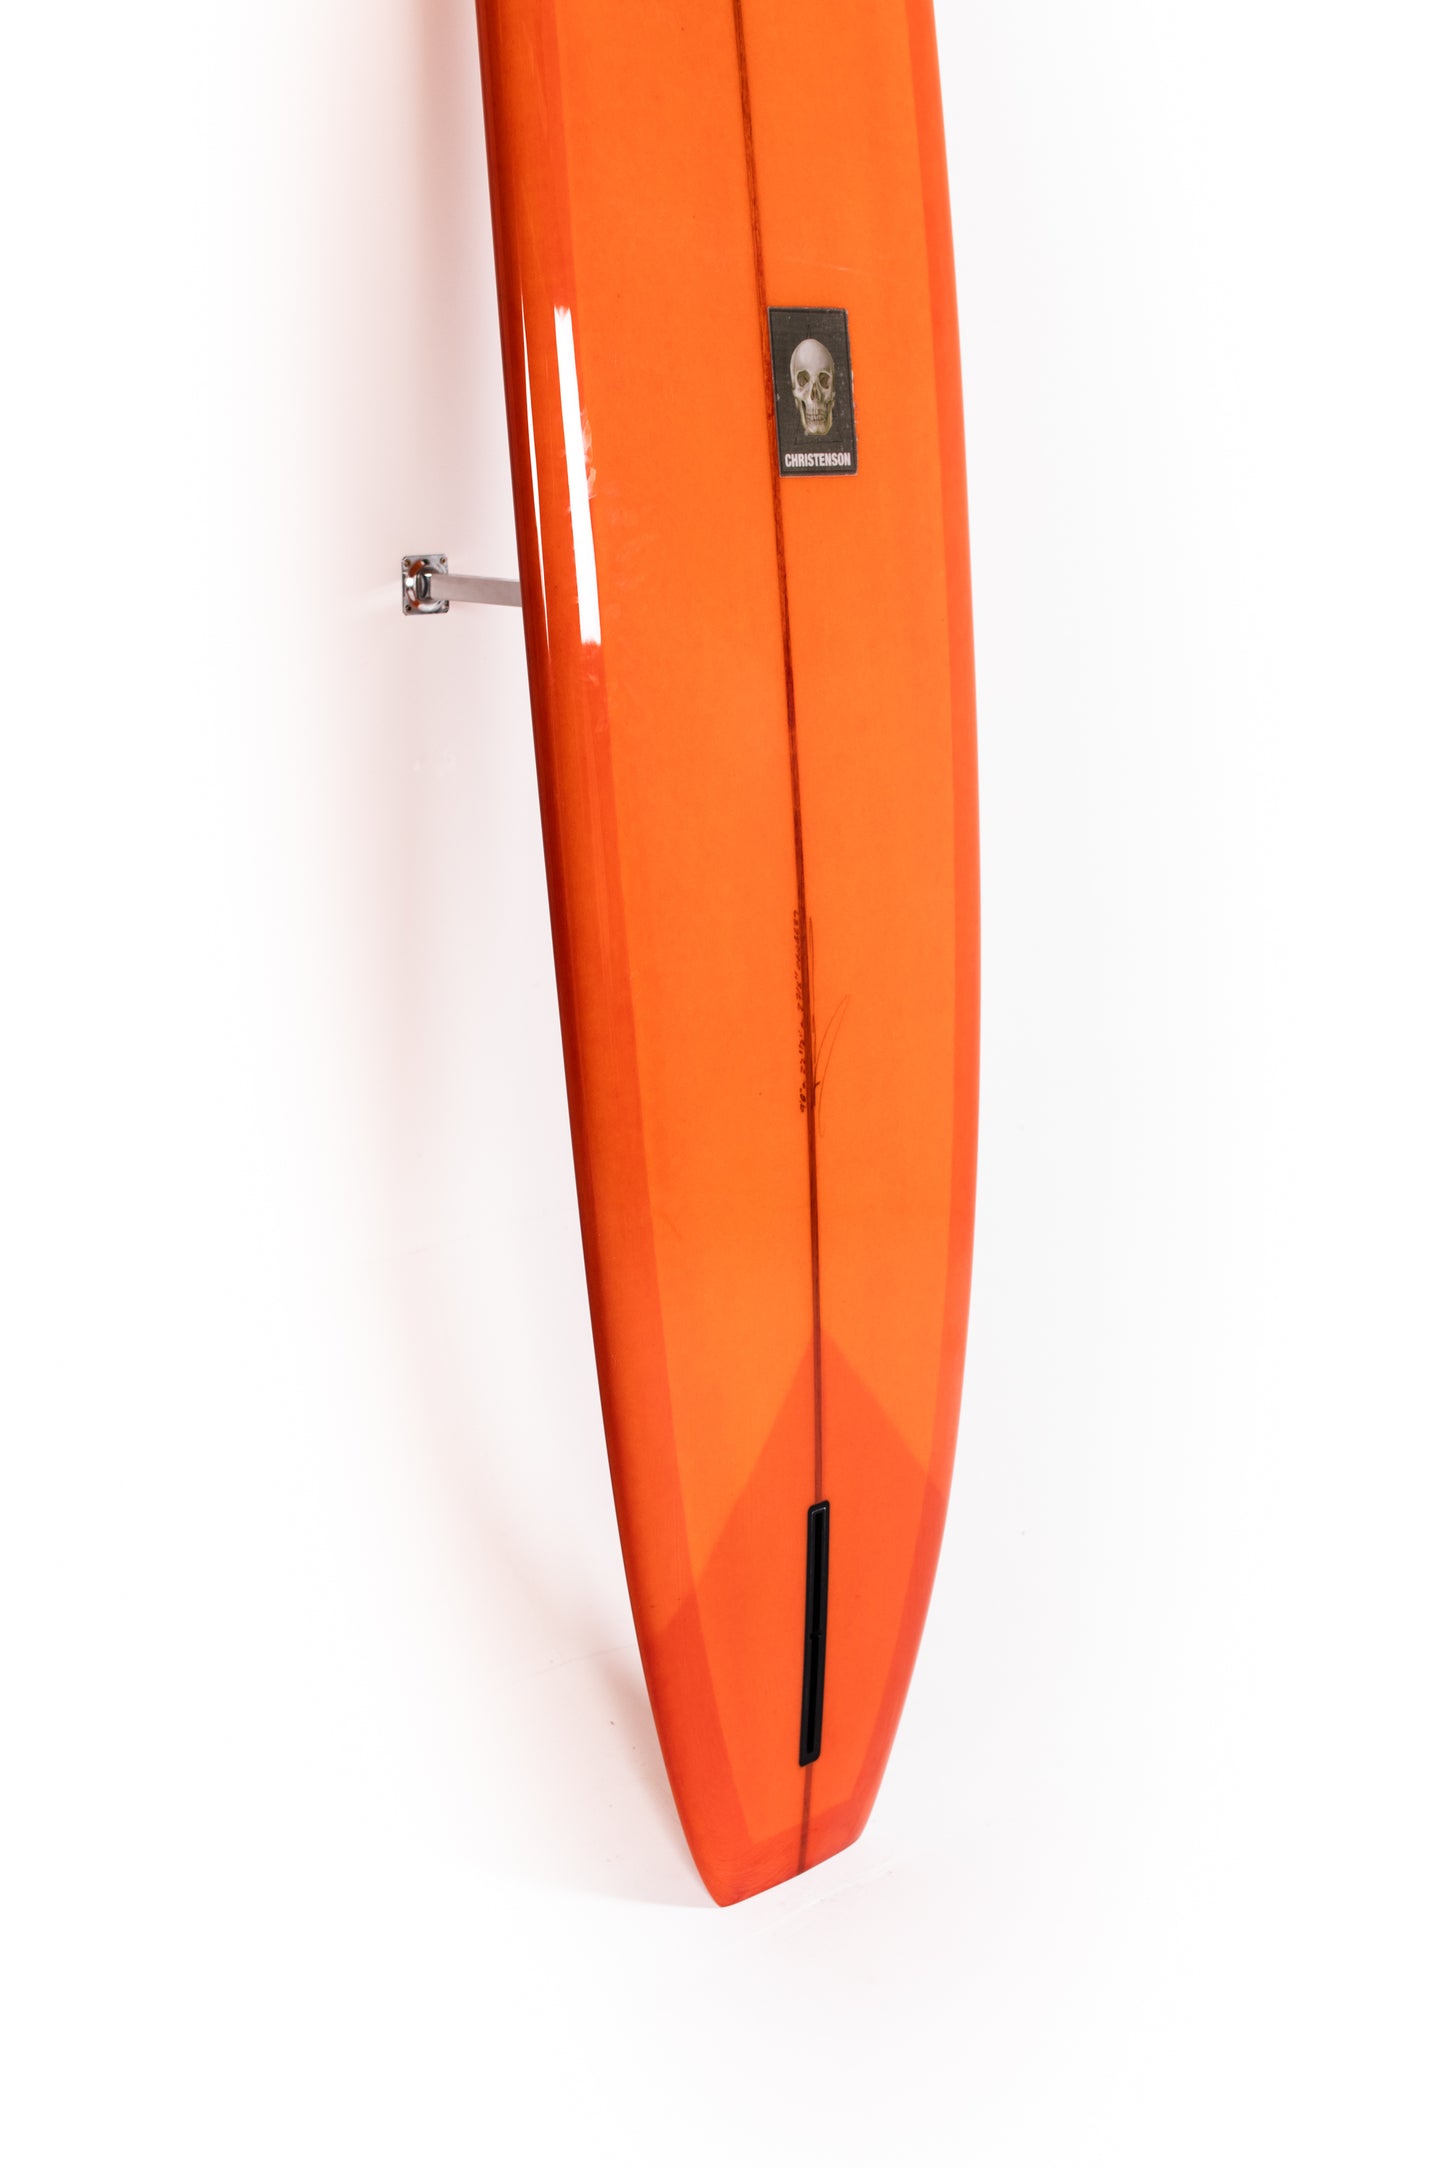 
                  
                    Pukas Surf Shop - Christenson Surfboards - BONNEVILLE - 9'0" x 22 1/2 x 2 7/8 - CX04689
                  
                